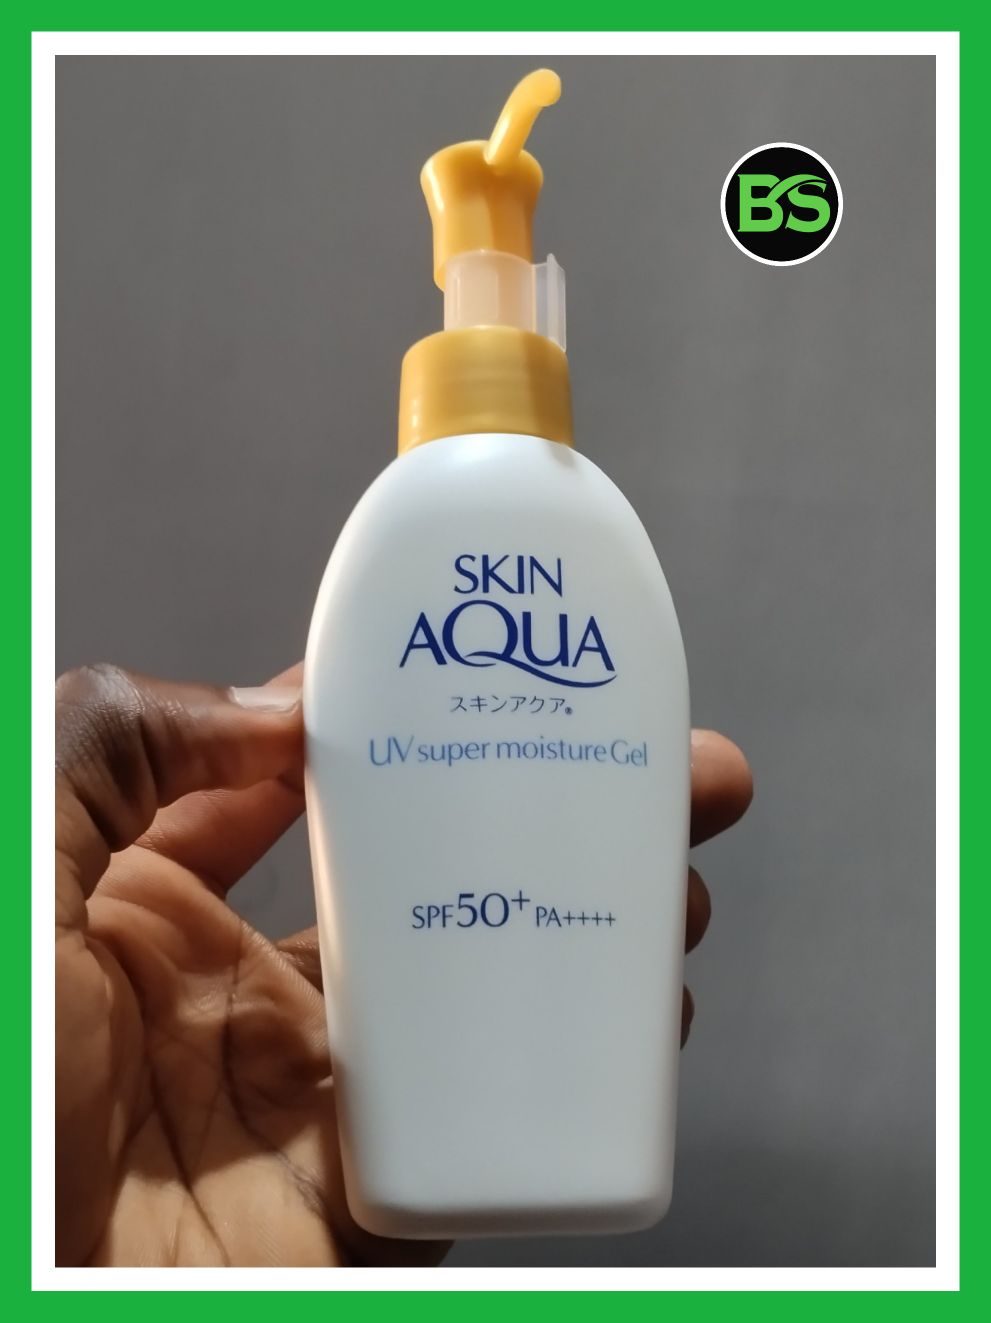 Skin Aqua UV Super Moisture Gel SPF 50+ review 